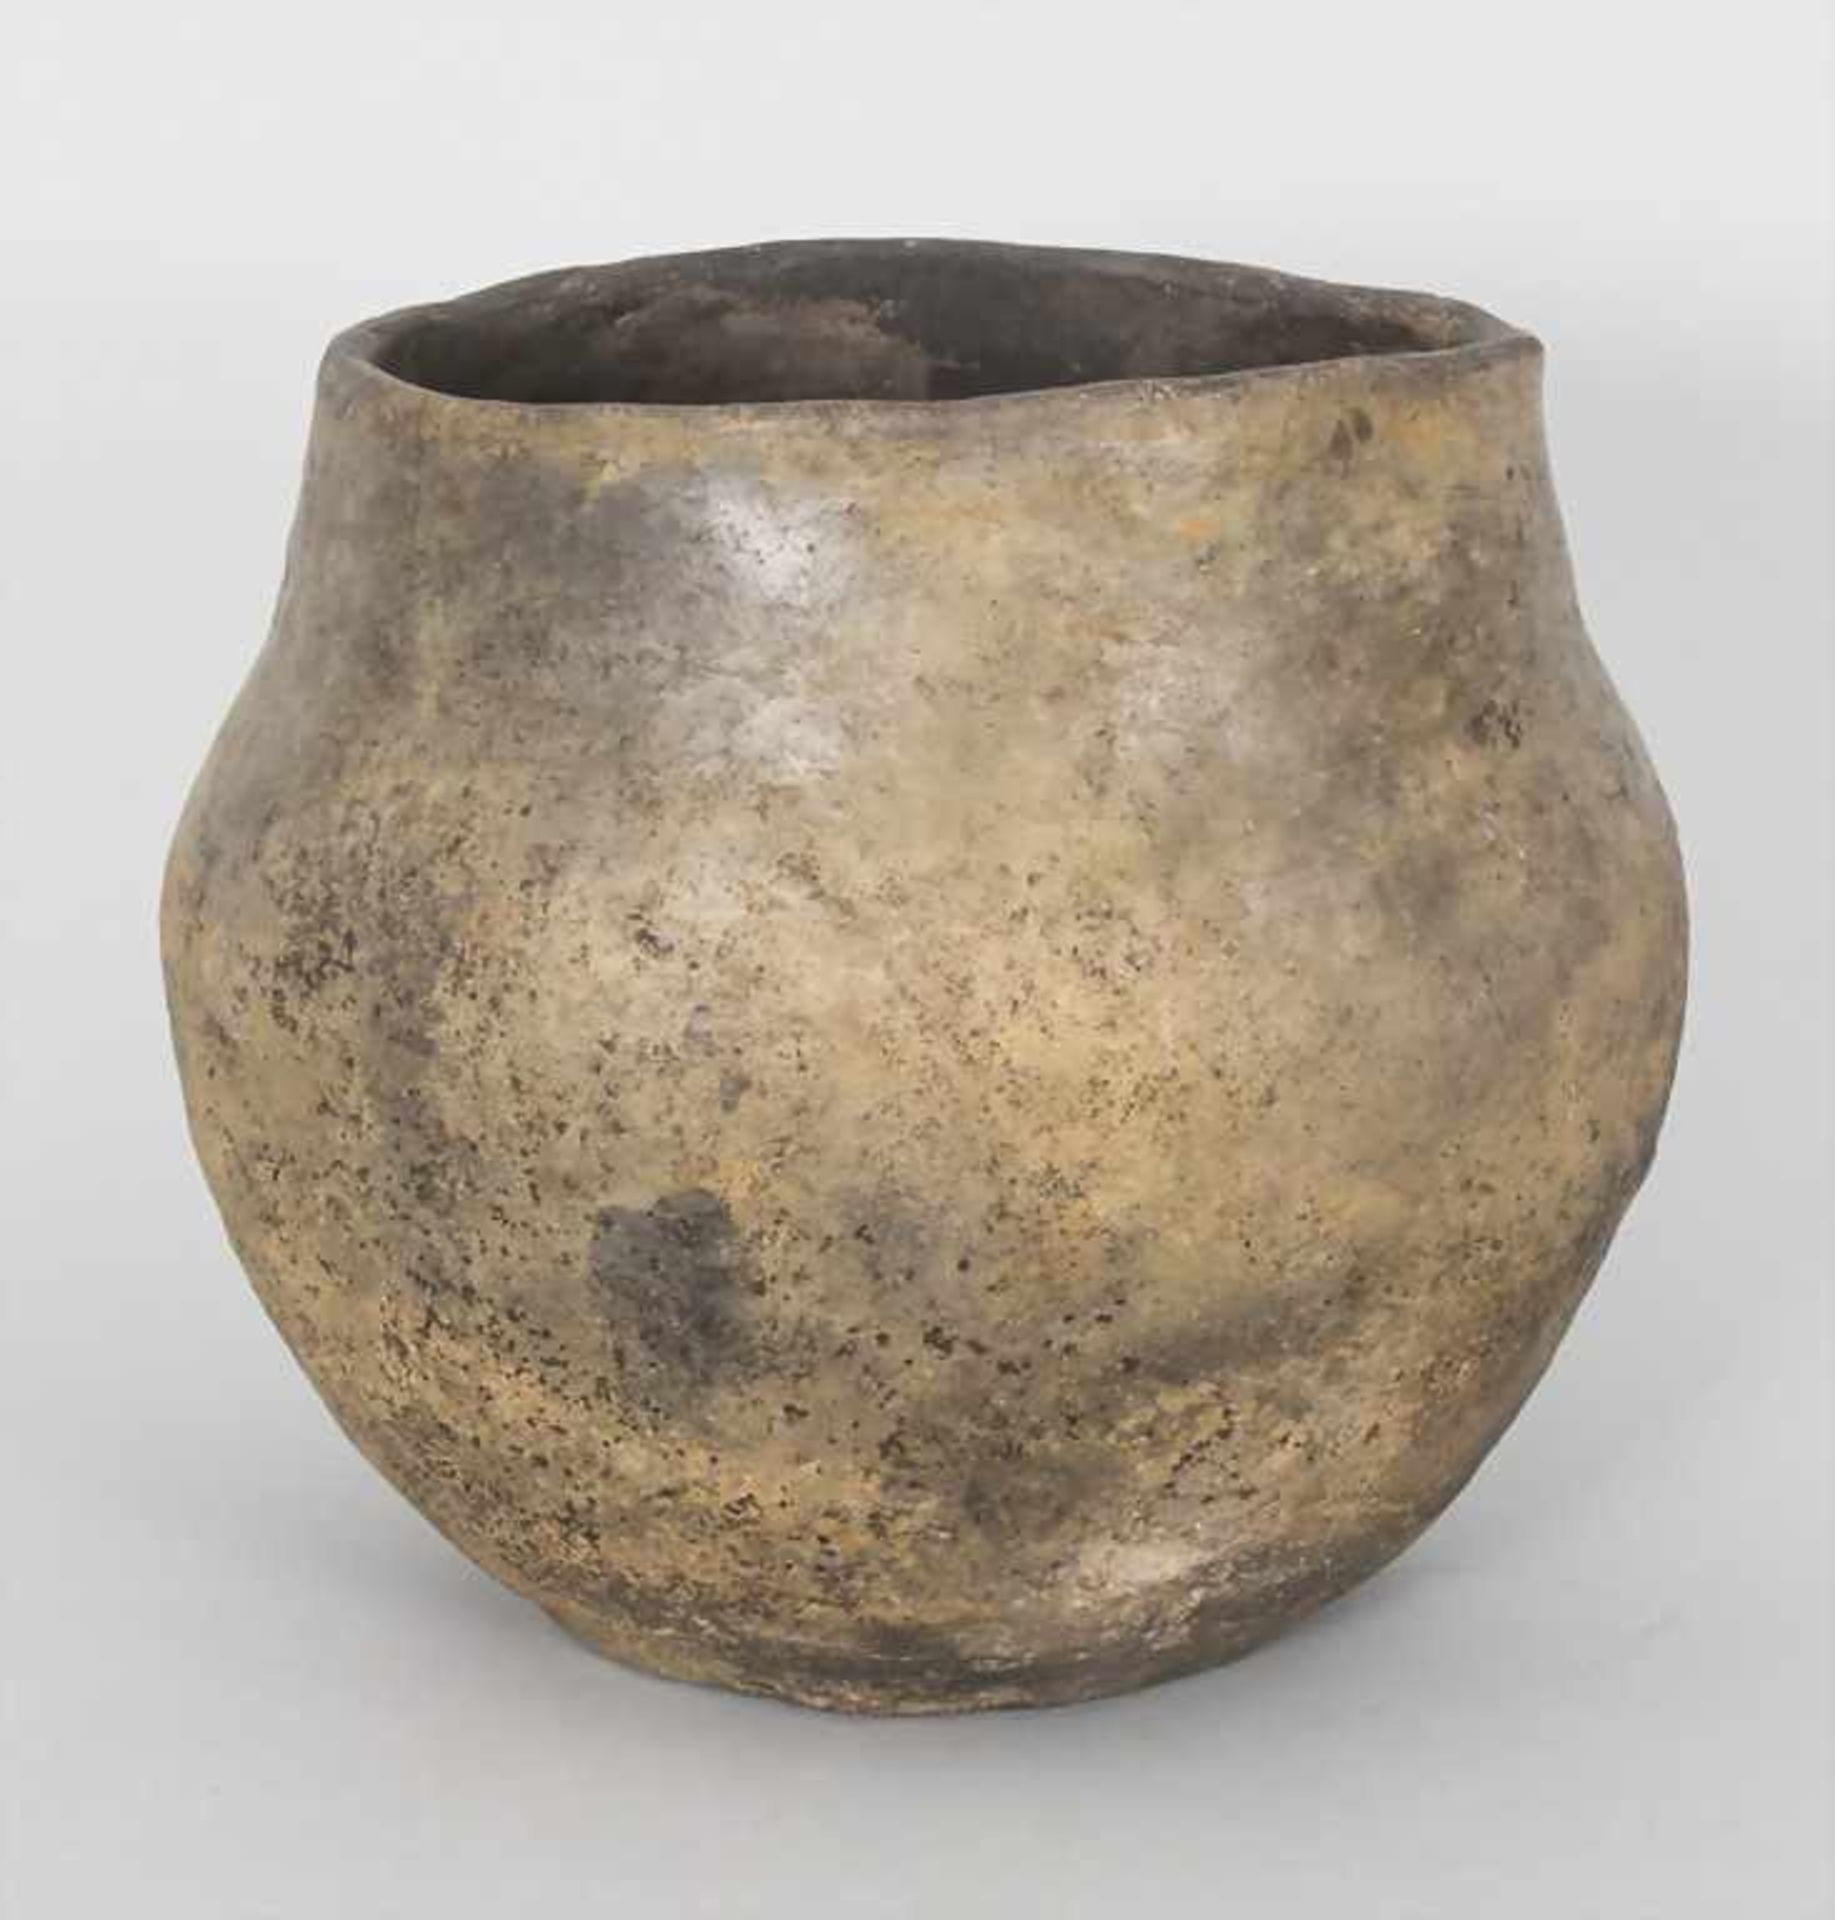 Bronzezeitliches Keramik-Gefäß / A Bronze Age ceramic vessel, Lausitzer Kultur, 9. - 6. Jh. v. Chr.